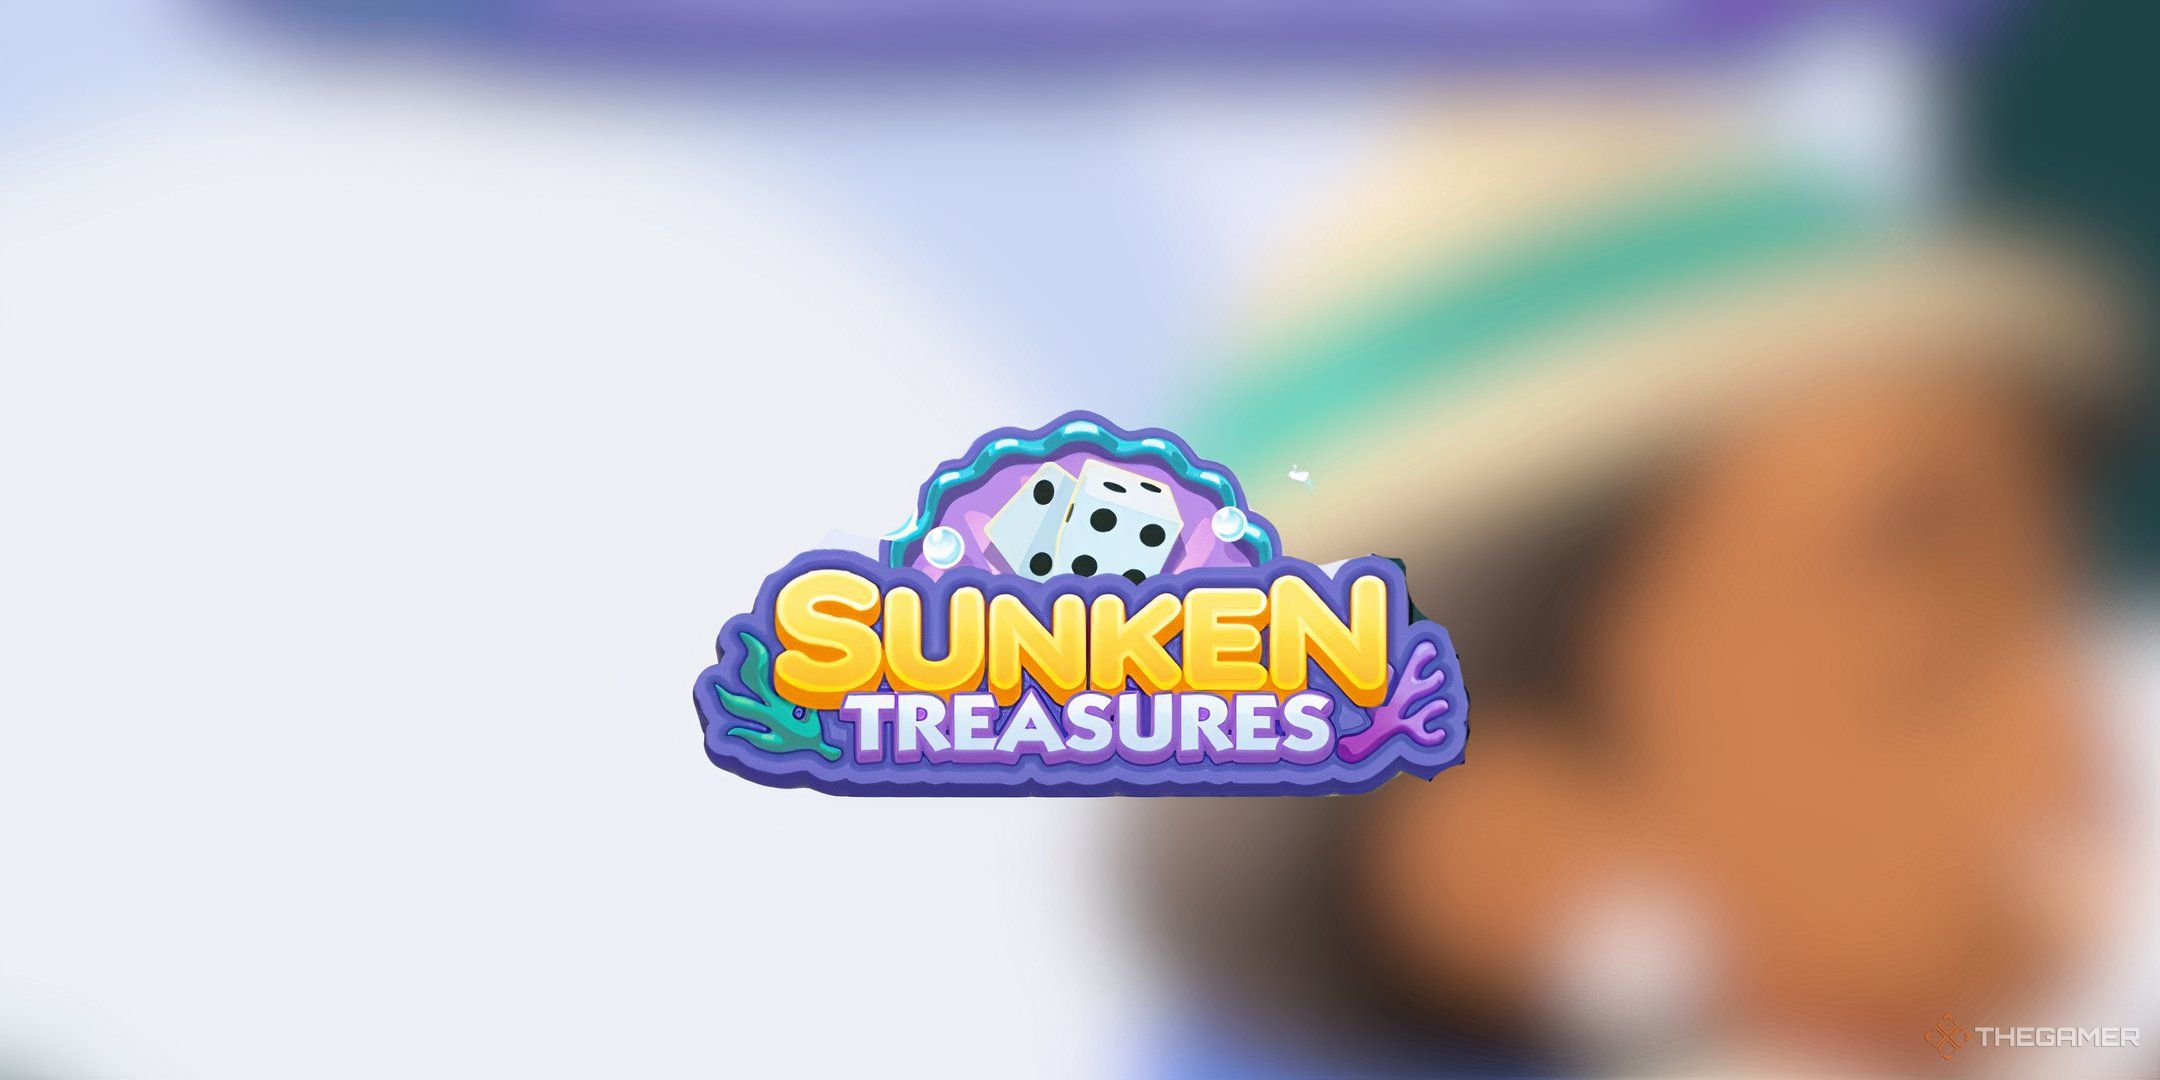 Sunken Treasures logo in Monopoly Go